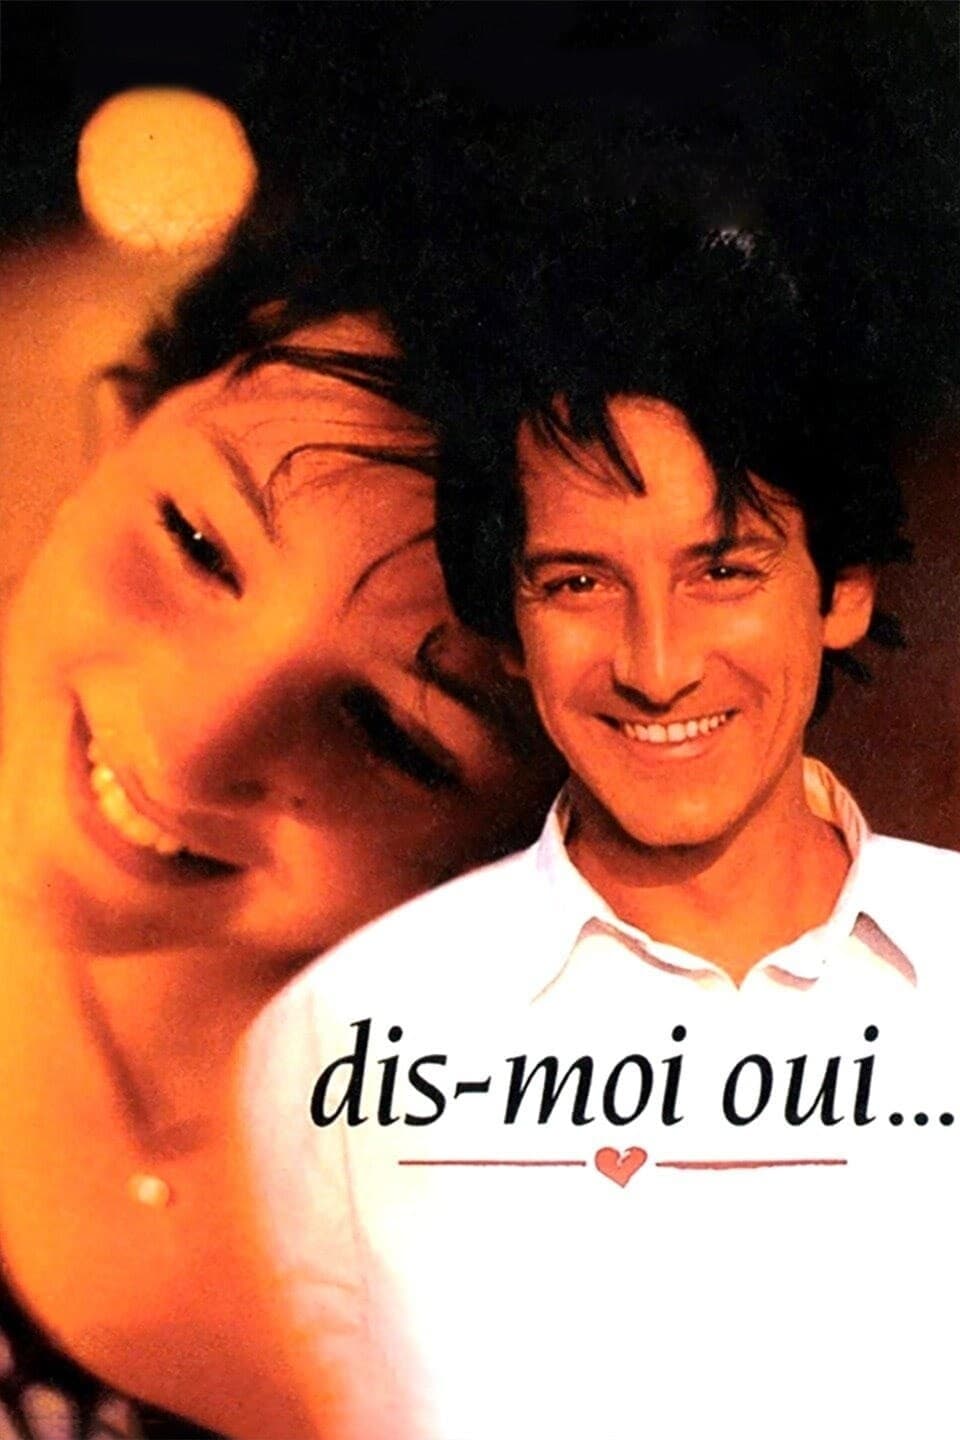 Dis-moi oui (1995)